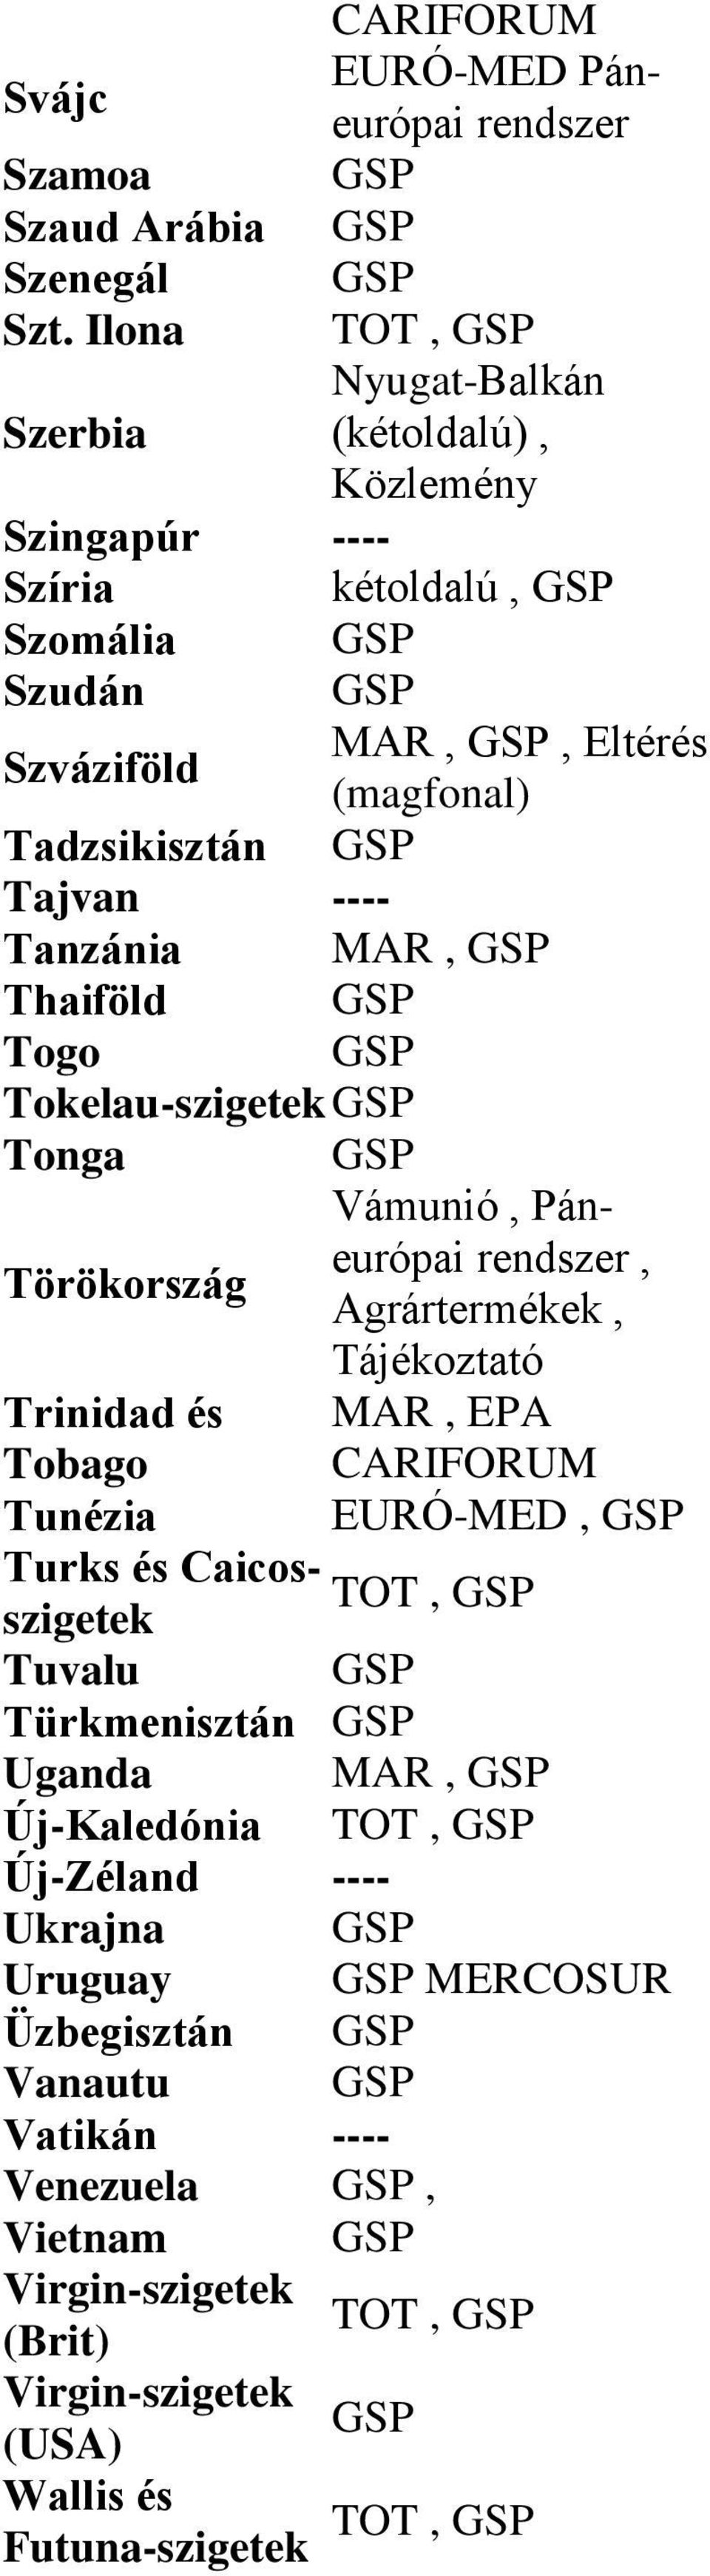 ---- Tanzánia MAR, Thaiföld Togo Tokelau-szigetek Tonga Vámunió, Páneurópai Törökország rendszer, Agrártermékek, Tájékoztató Trinidad és Tobago Tunézia